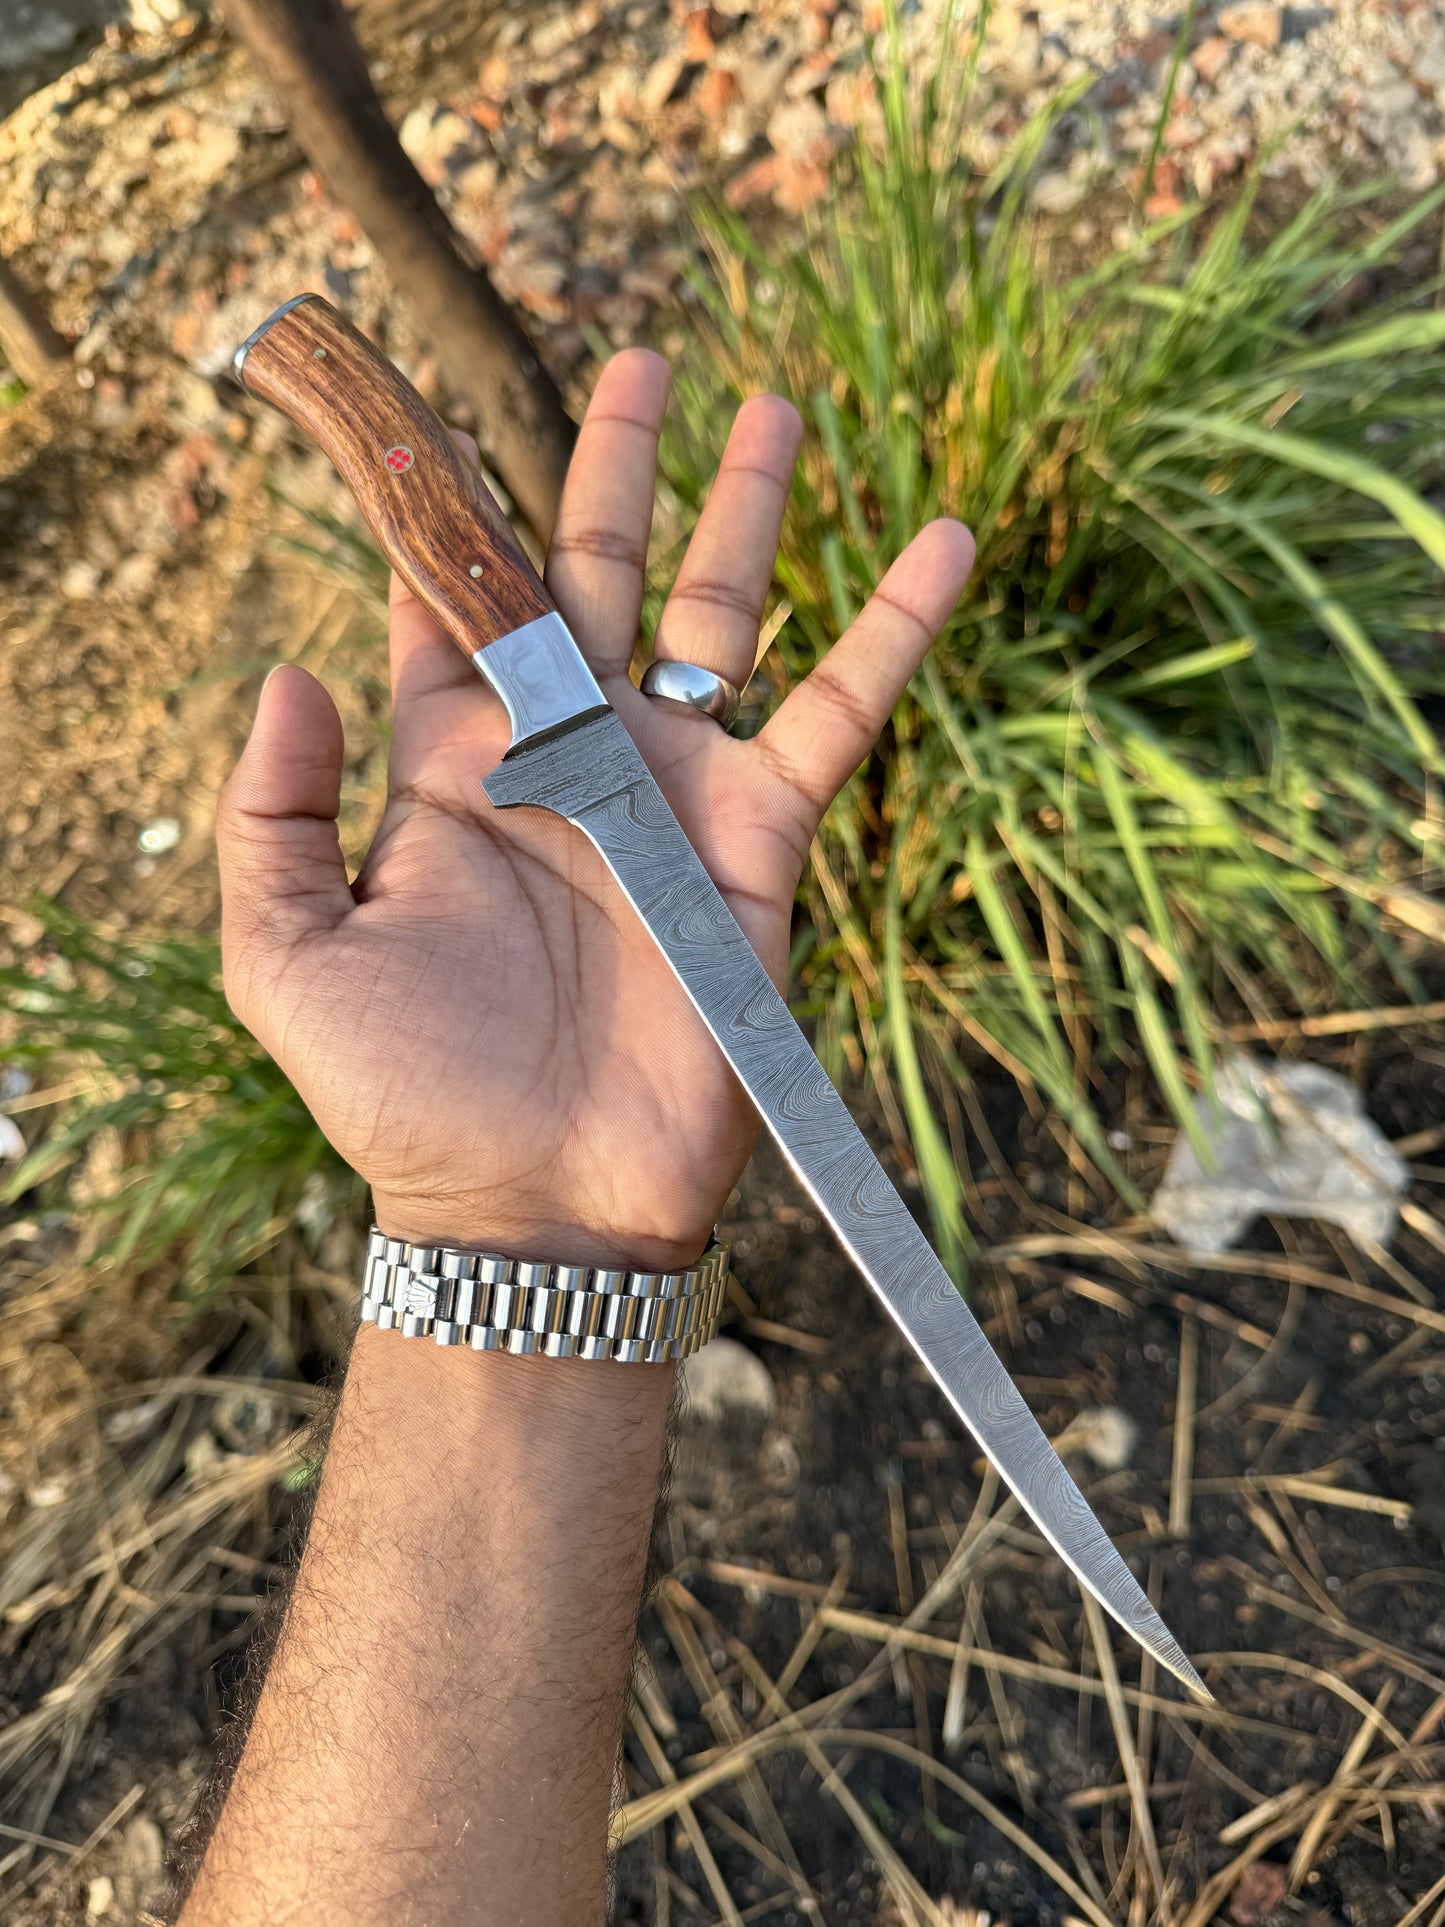 Custom Handmade Damascus Steel Fillet Knife